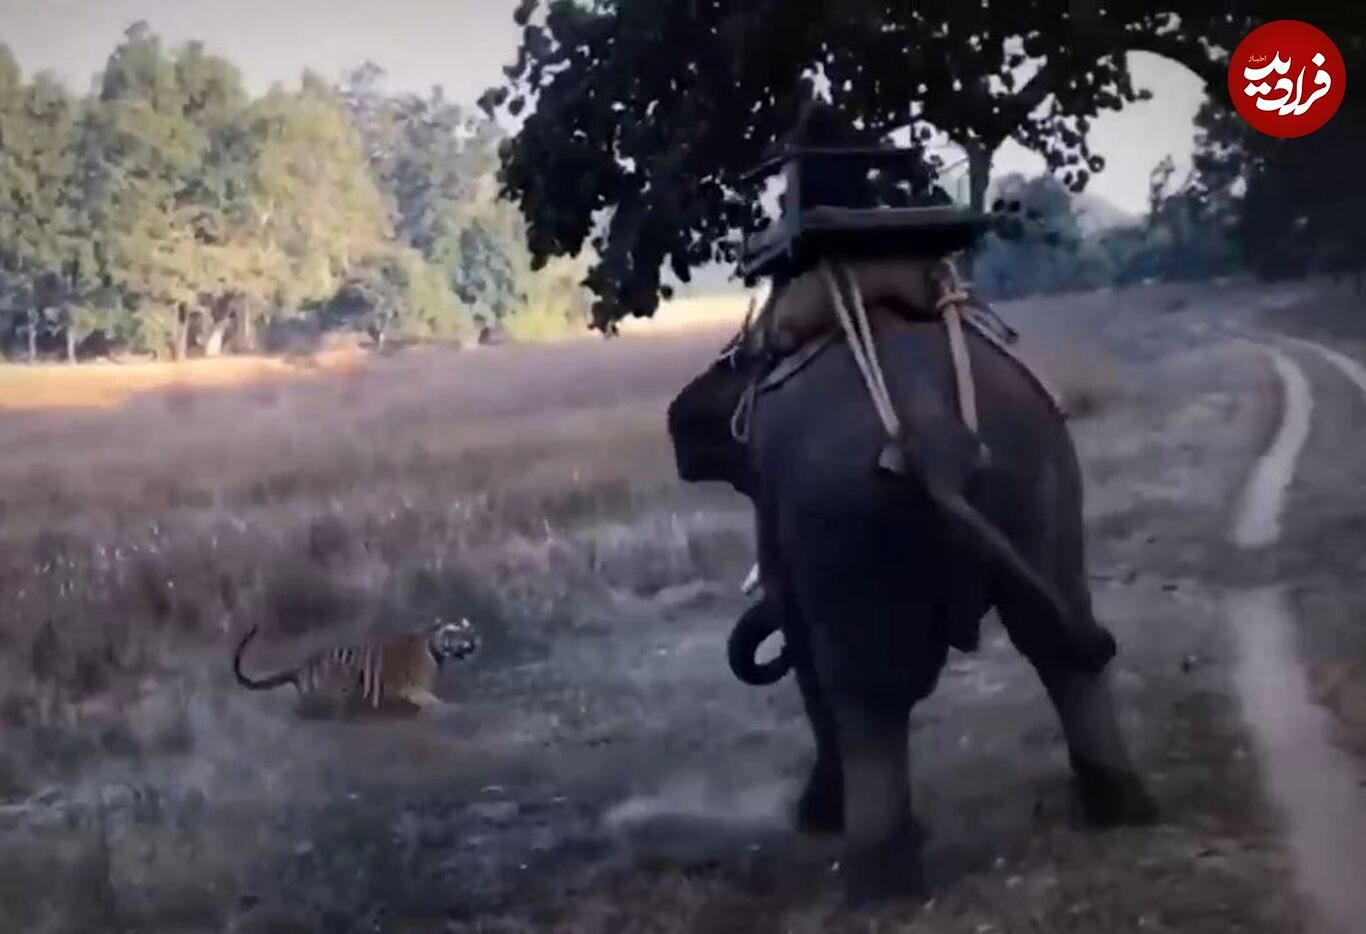 (ویدئو) روش احمقانه ببر برای شکار فیل عظیم الجثه!